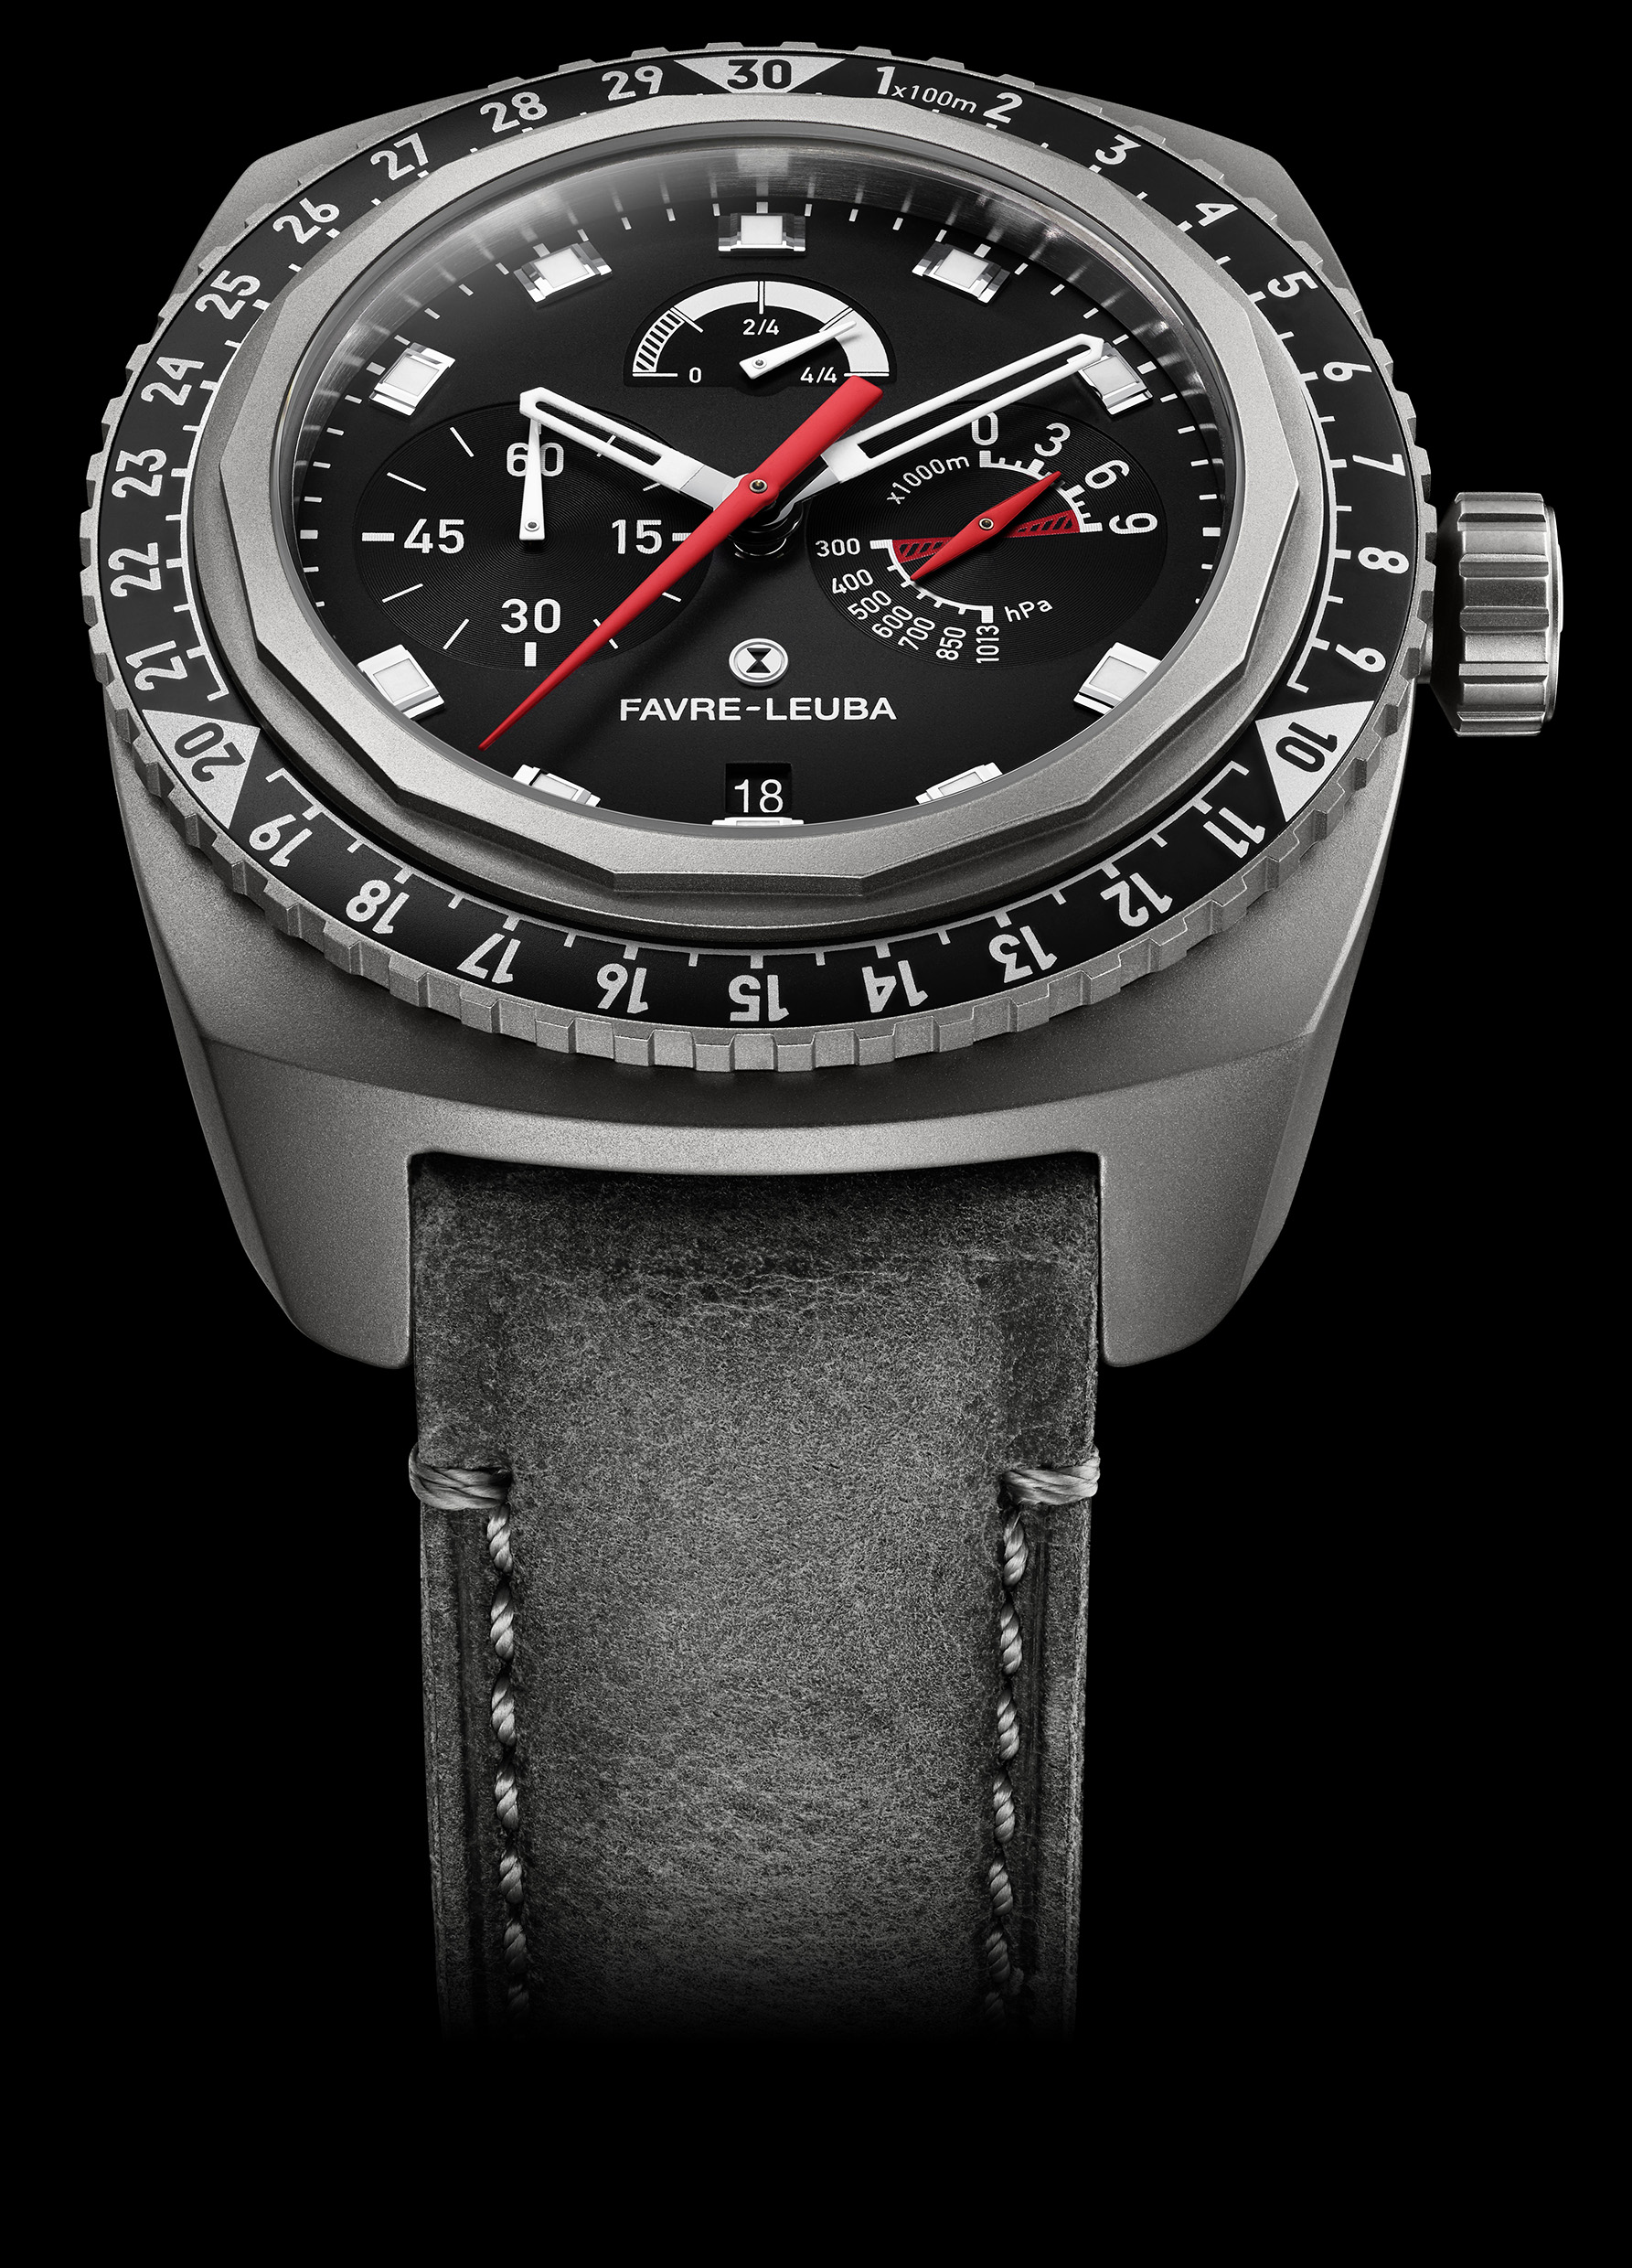 スイス時計ブランド ファーブル ルーバ 創業2年記念モデル レイダー ビバーク9000ブラック 世界で唯一の高度9000mまで測定できる機械式 腕時計 ブラックのカラーバリエーション登場 Swissprimebrands株式会社のプレスリリース